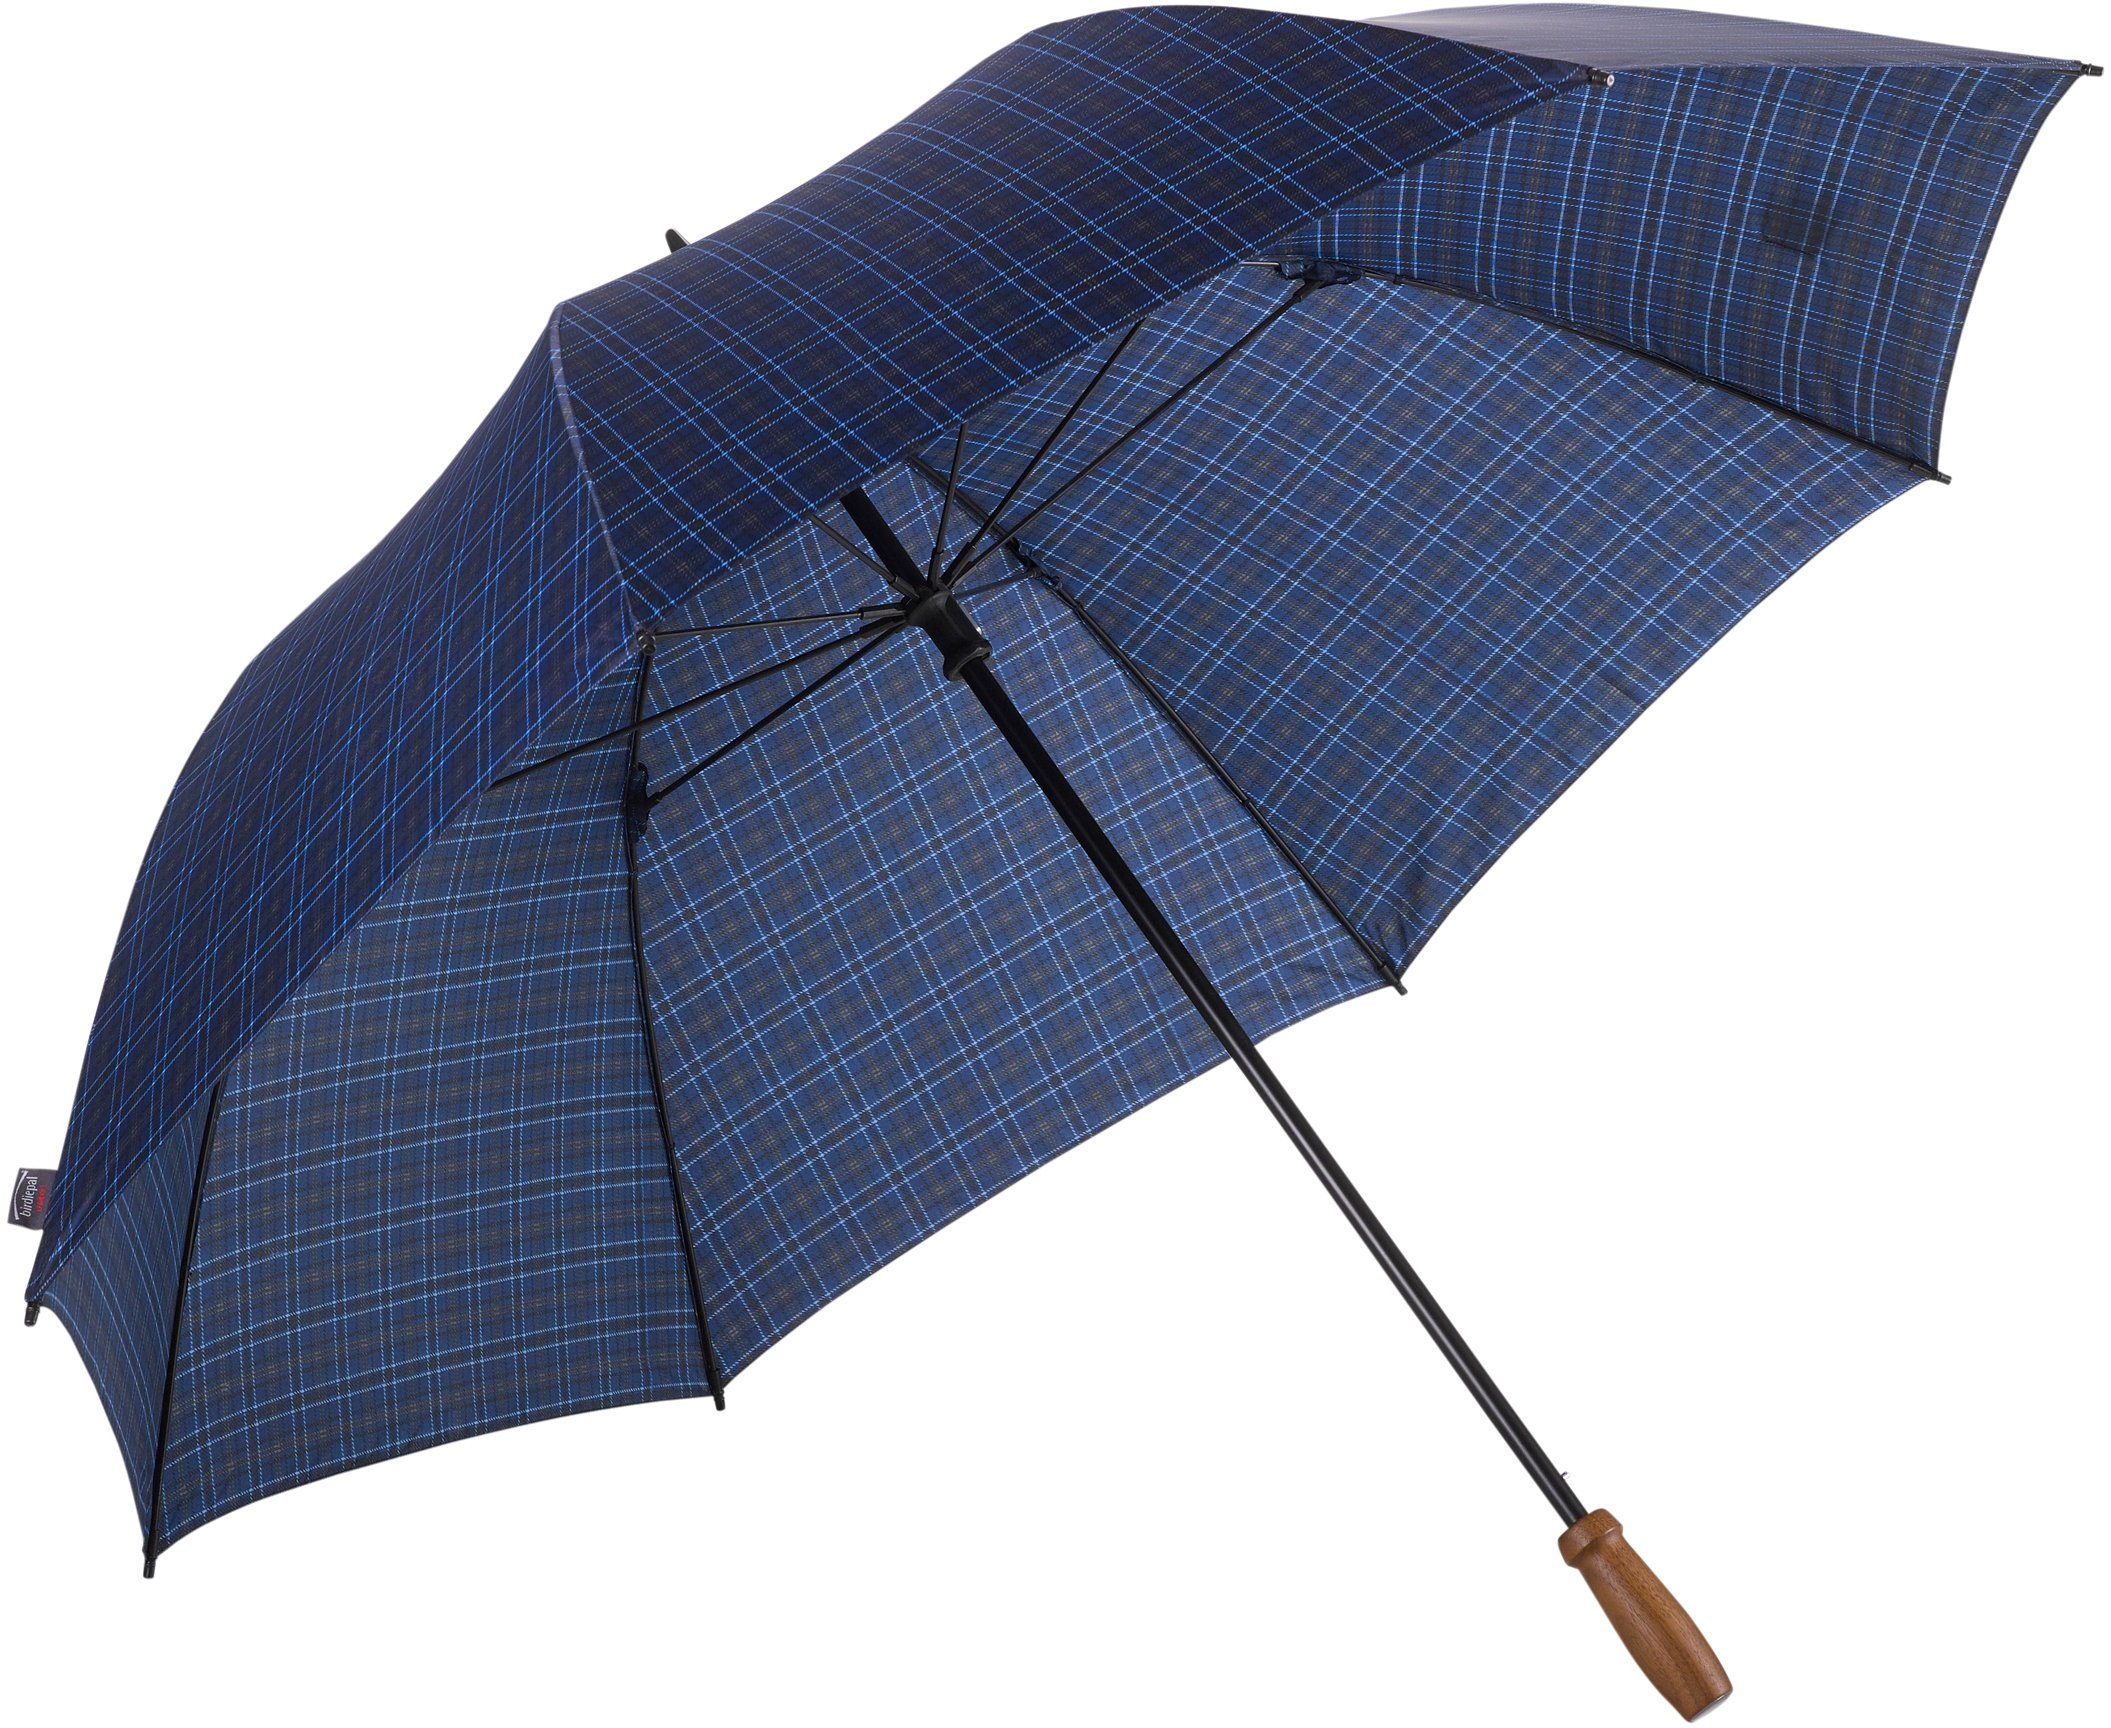 EuroSCHIRM® Partnerschirm birdiepal® classic, karodesign, Regenschirm für Zwei, mit Echtholzgriff aus Nussbaum